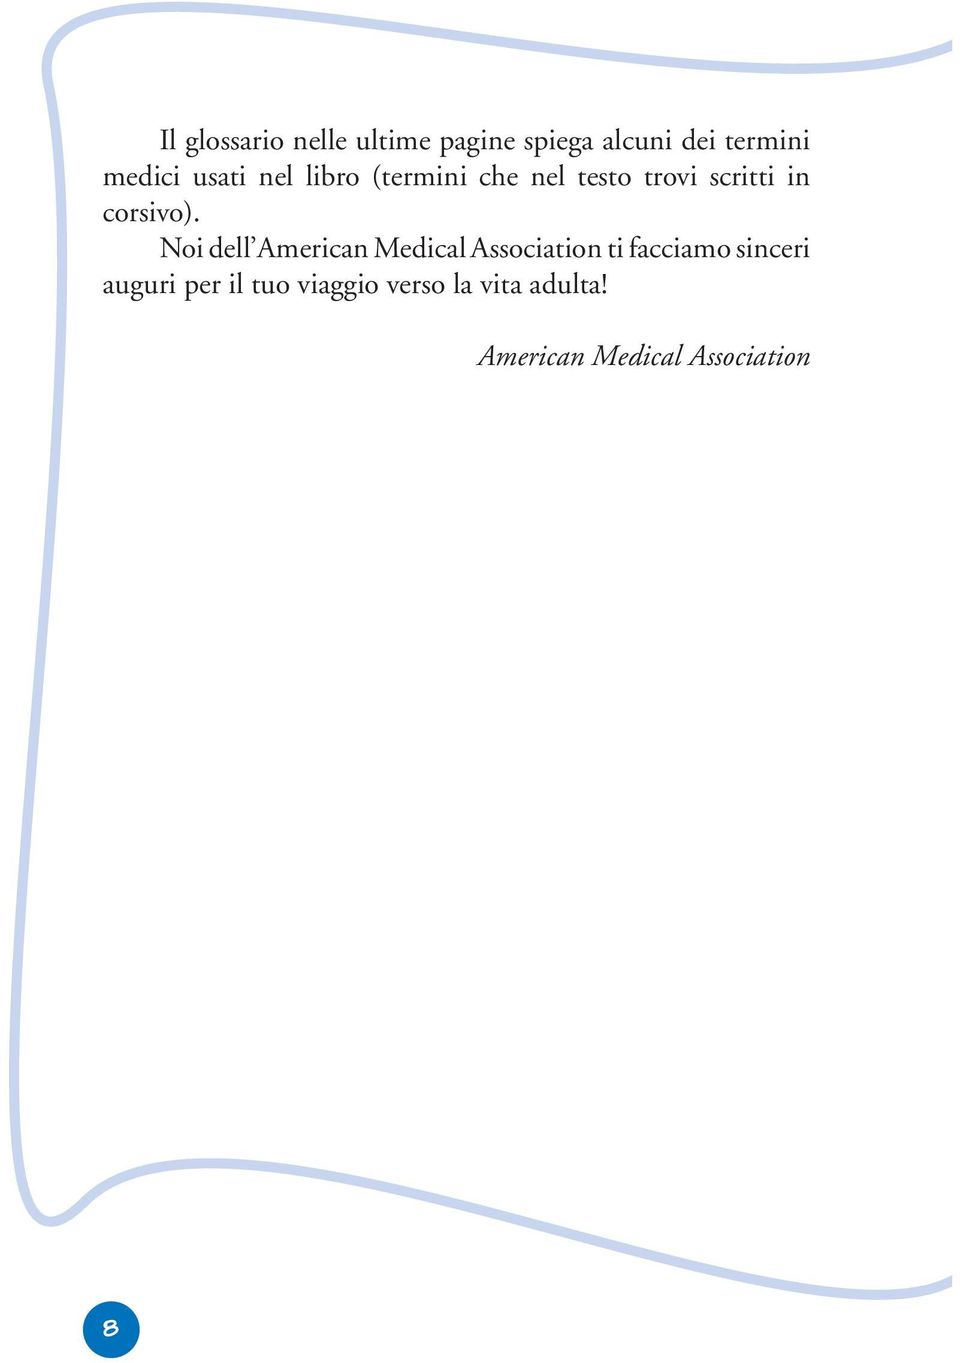 Noi dell American Medical Association ti facciamo sinceri auguri